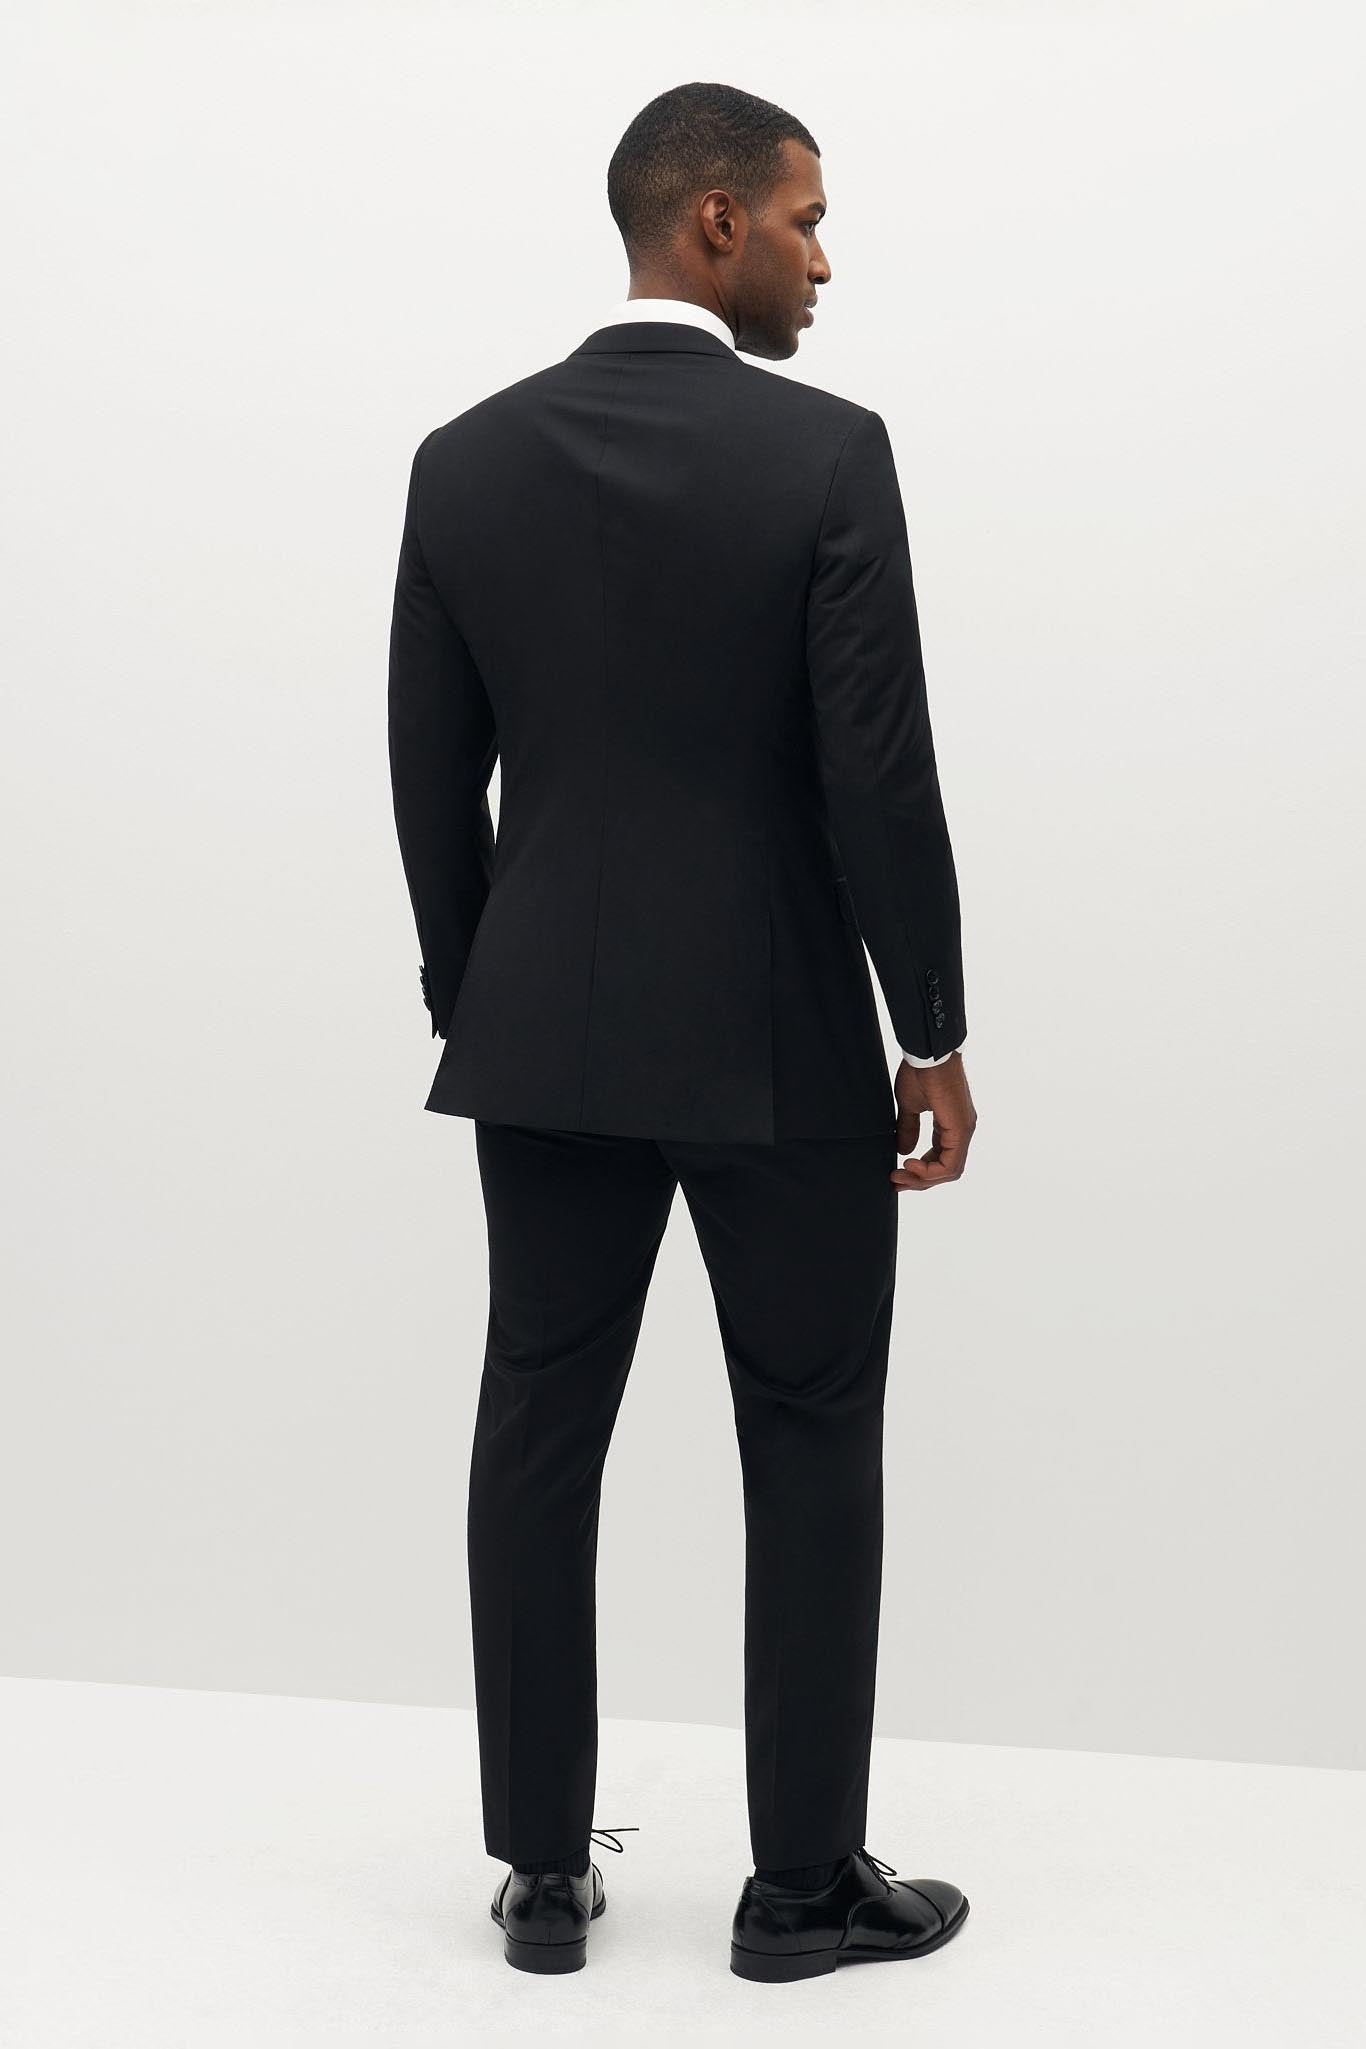 Classic Black Suit Pants by SuitShop